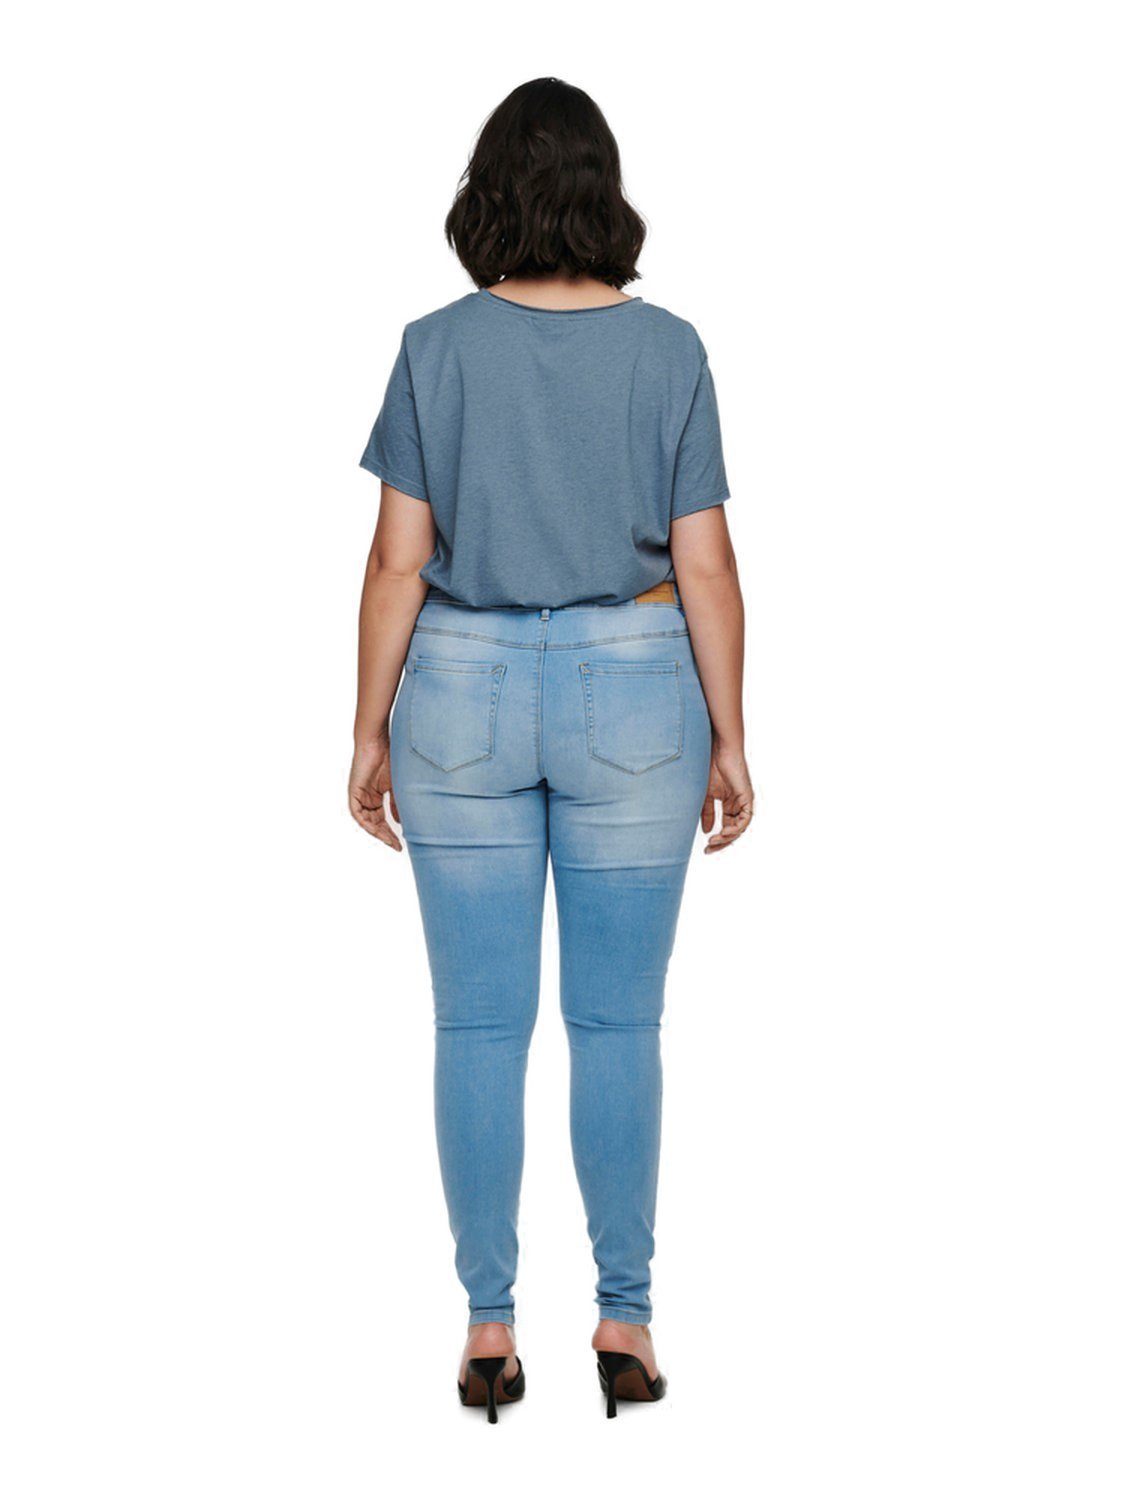 ONLY BJ13333 CARAUGUSTA Größen in mit Skinny-fit-Jeans Stretch großen